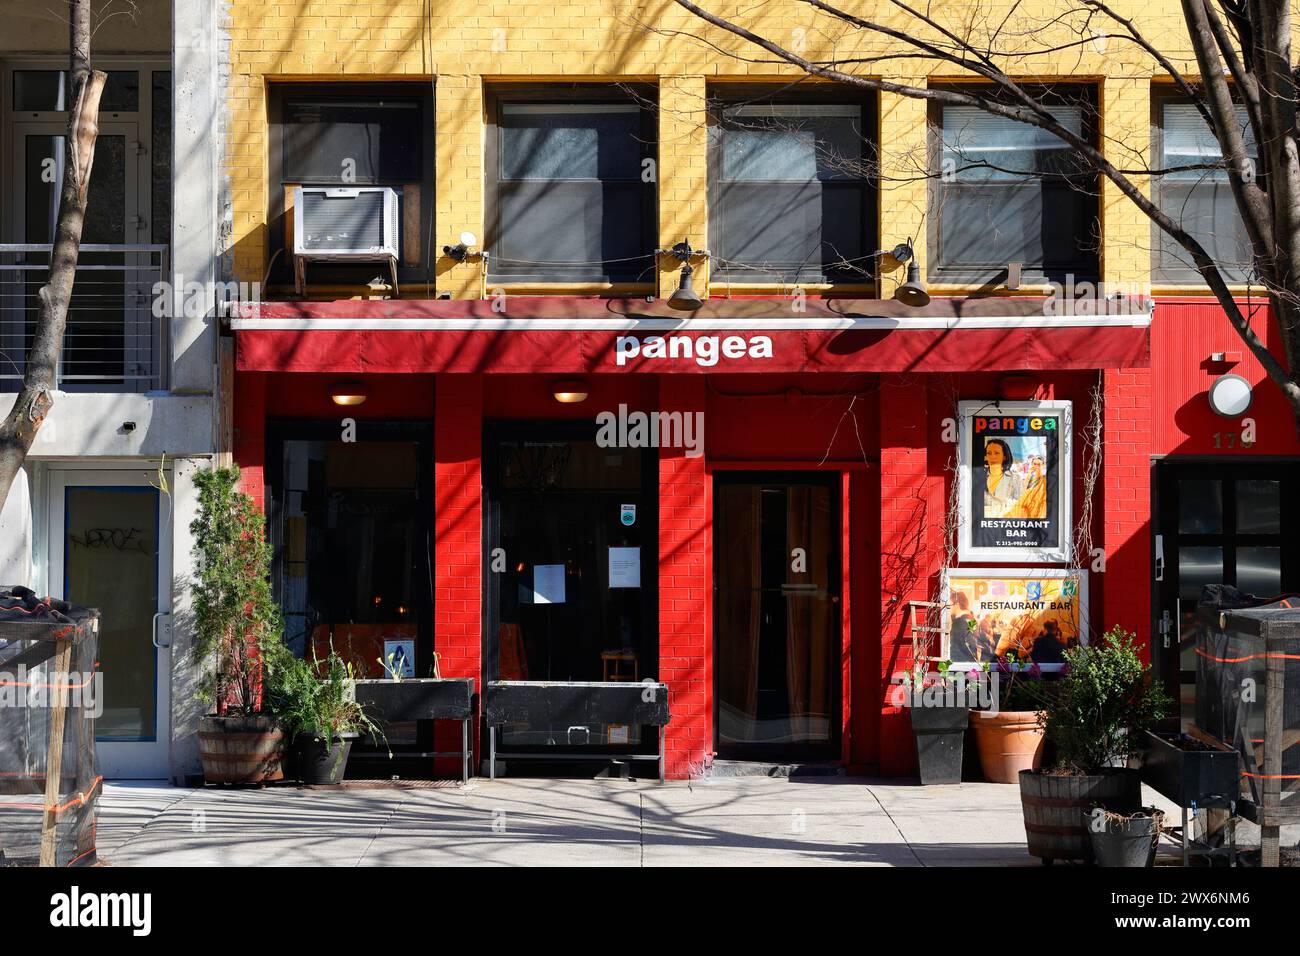 Pangea, 178 2nd Ave, New York, NYC devanture d'un restaurant italien dans le quartier East Village de Manhattan. Banque D'Images